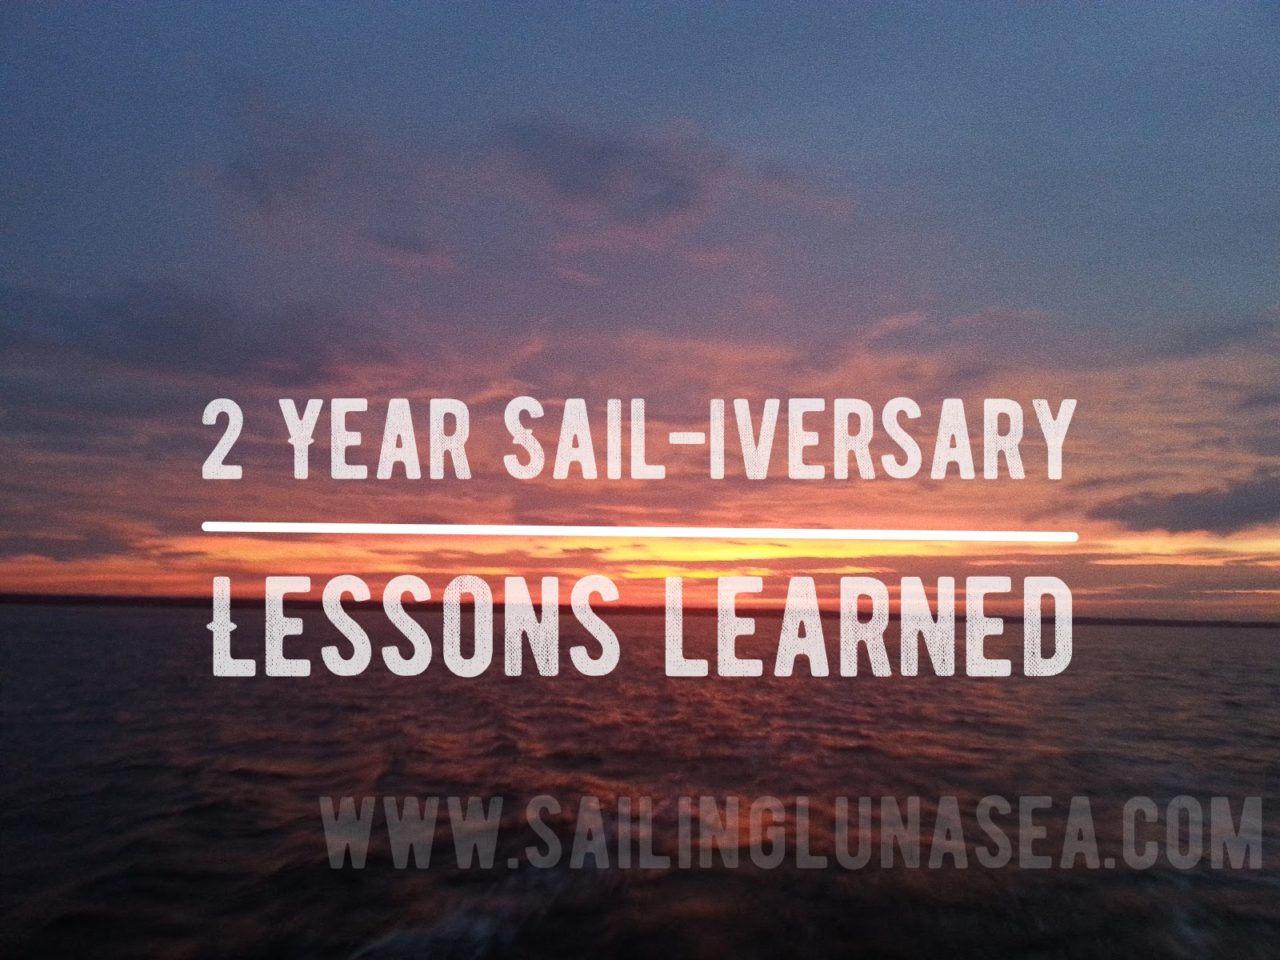 sailing luna sea lessons learned